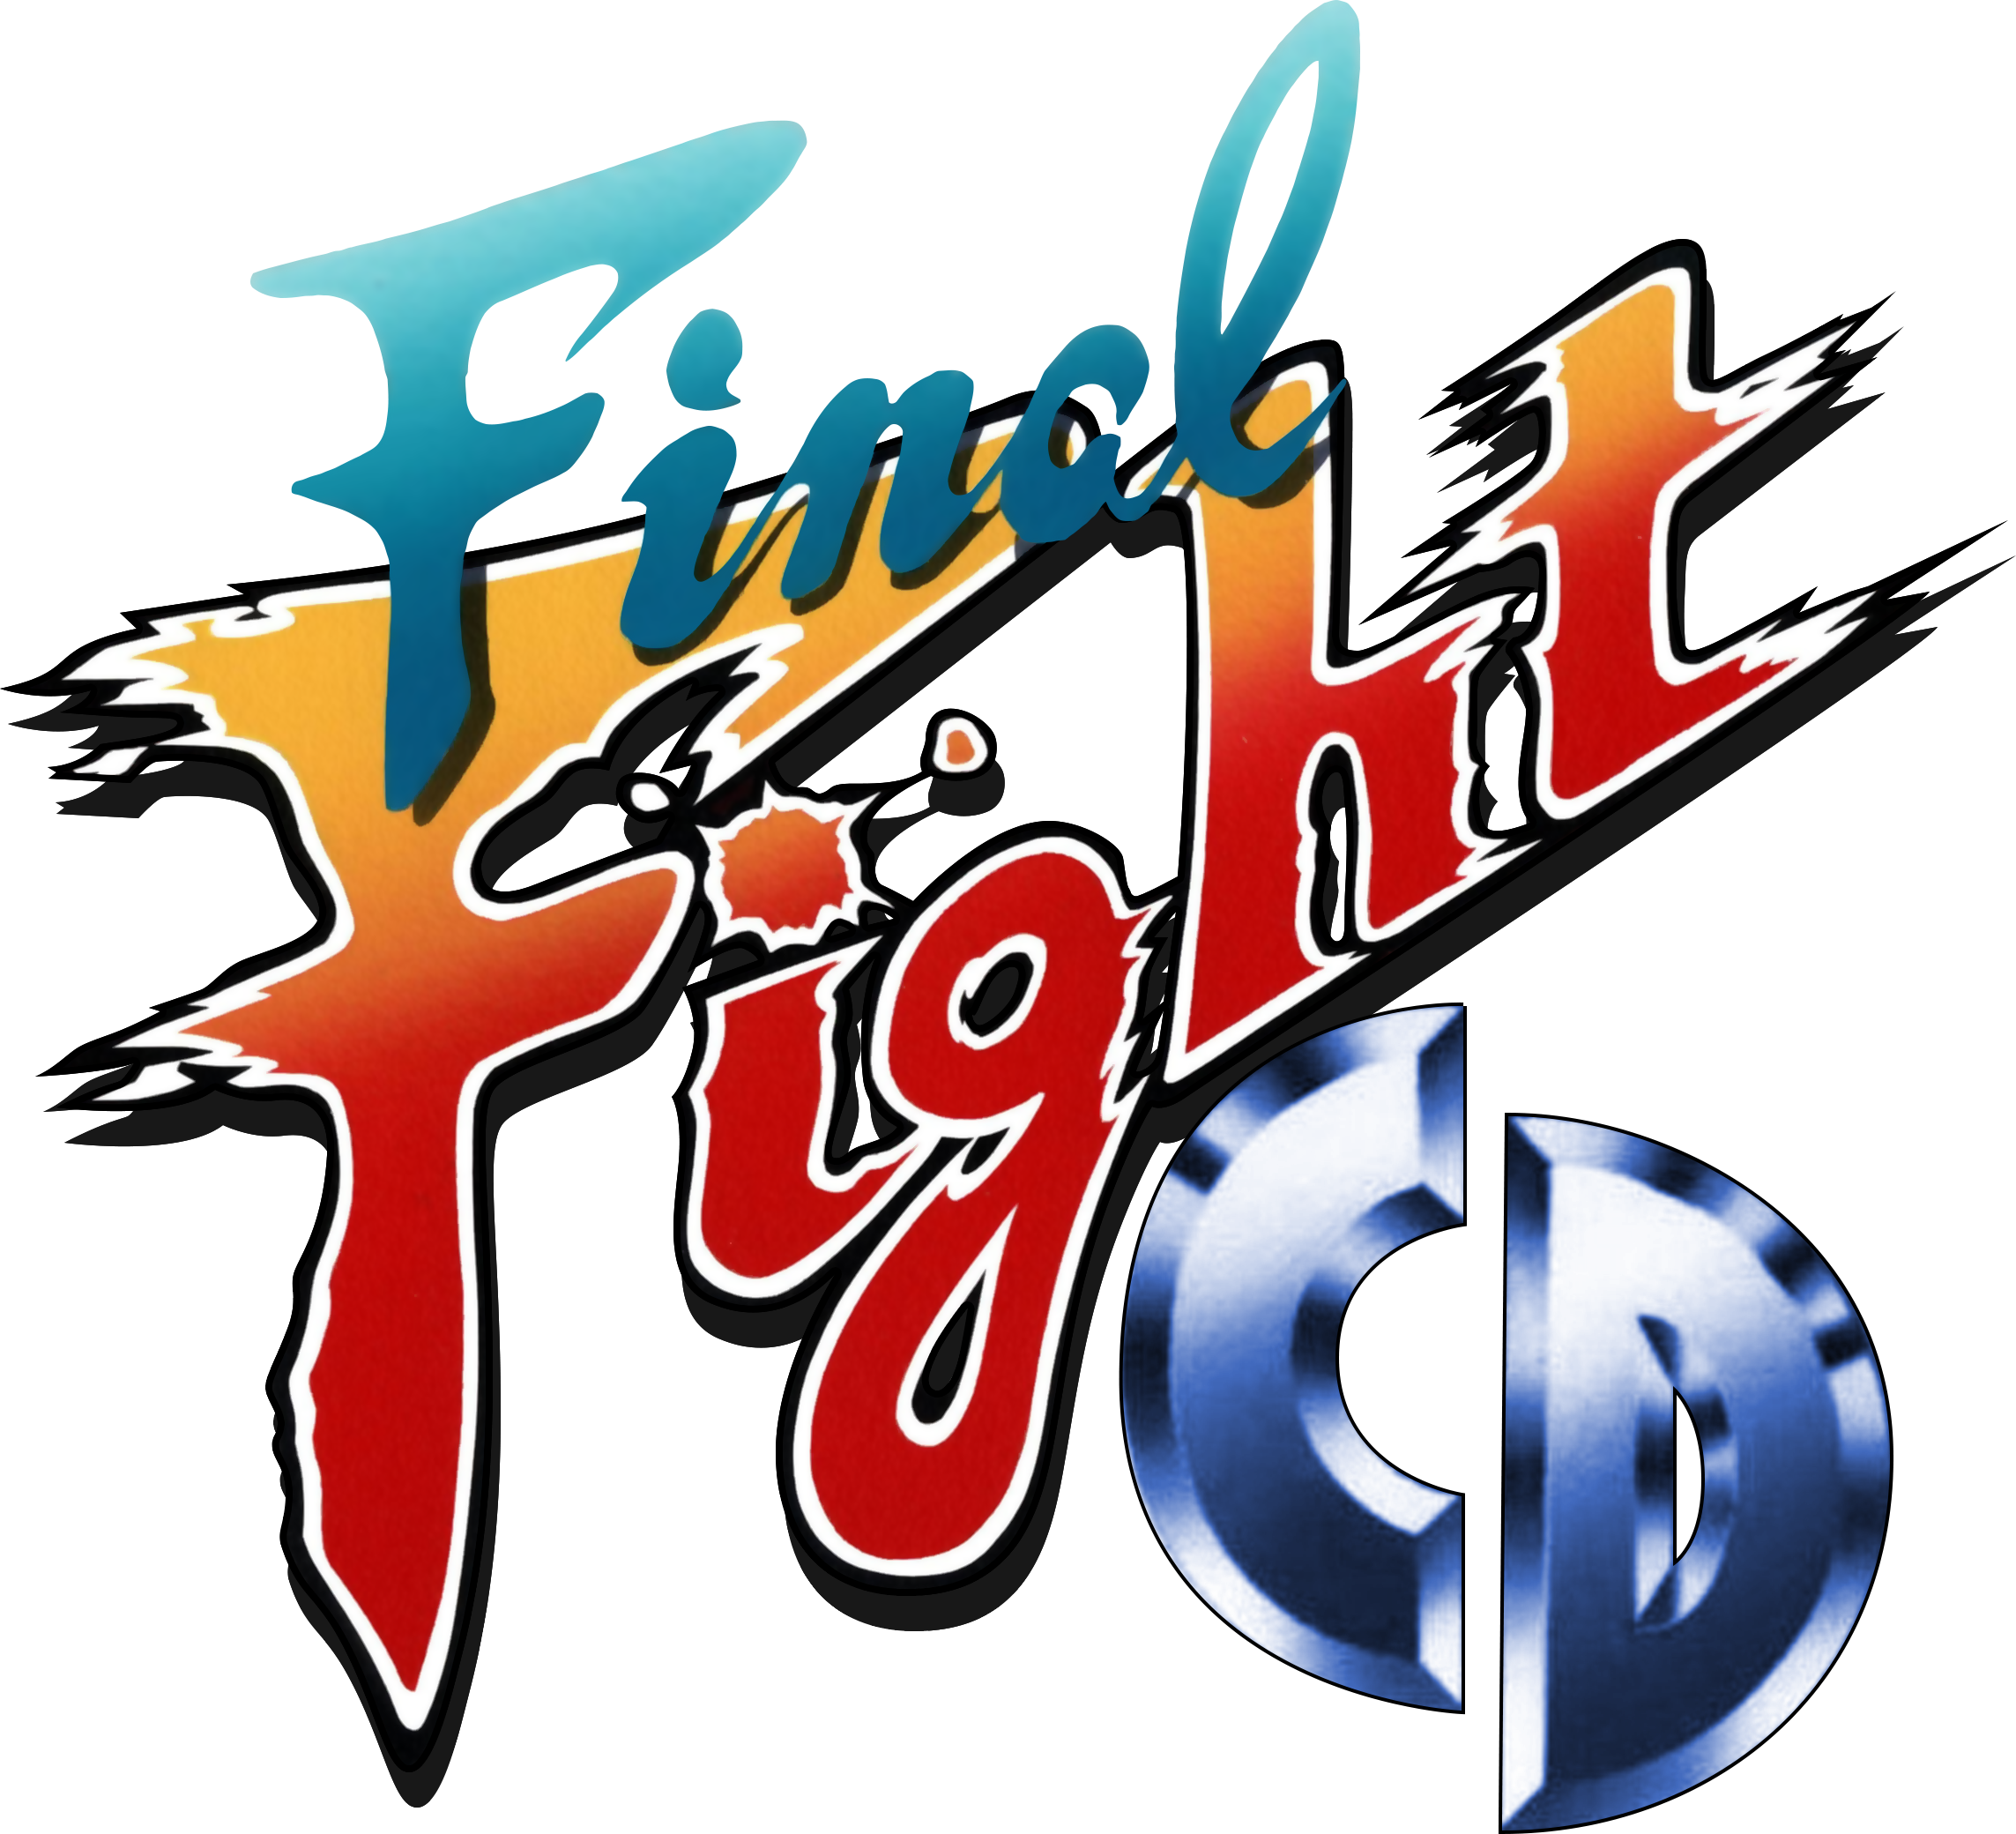 Www final. Mighty Final Fight логотип. Mighty Final Fight лого. Mighty Final Fight logo.